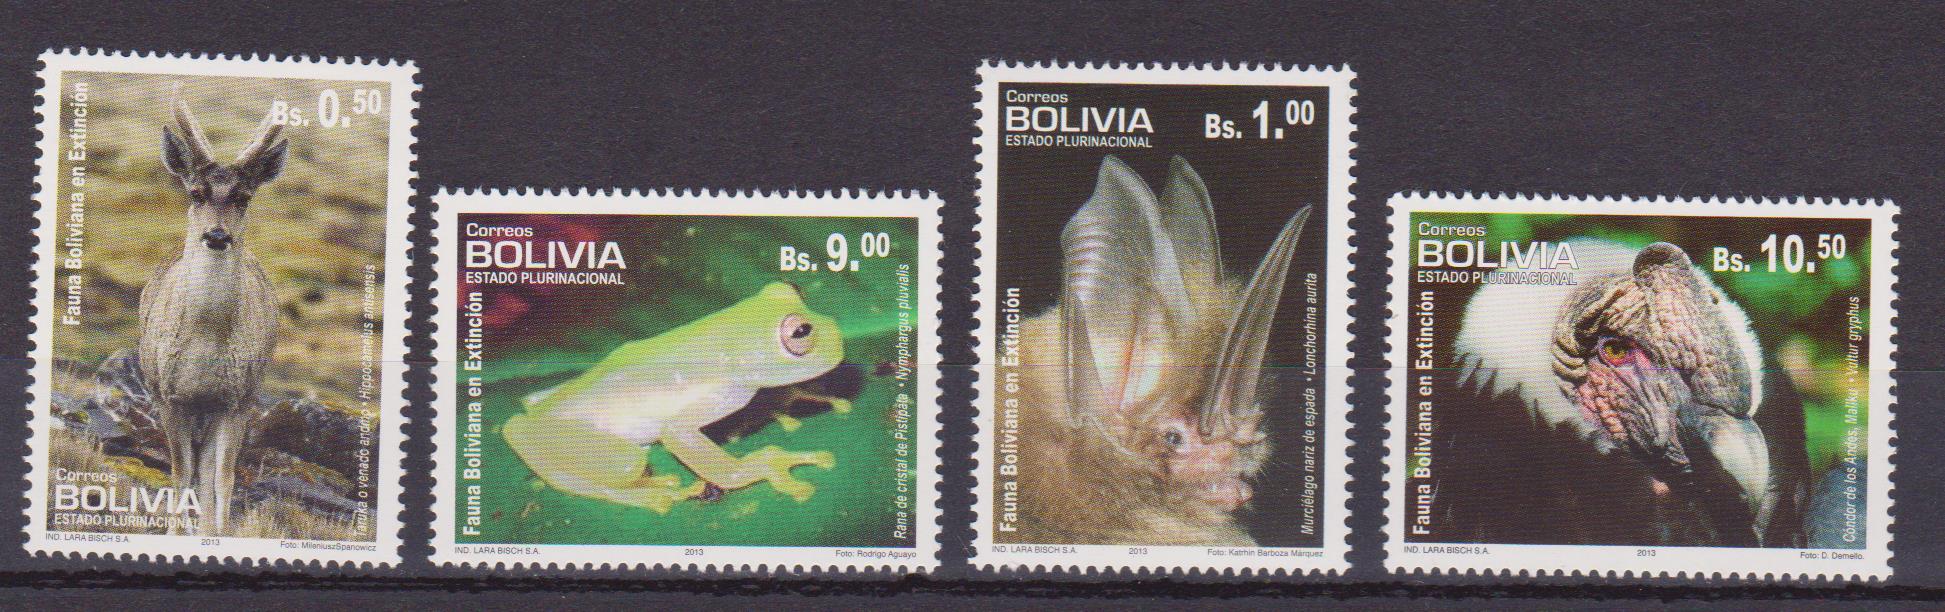 Bolivia fauna 001